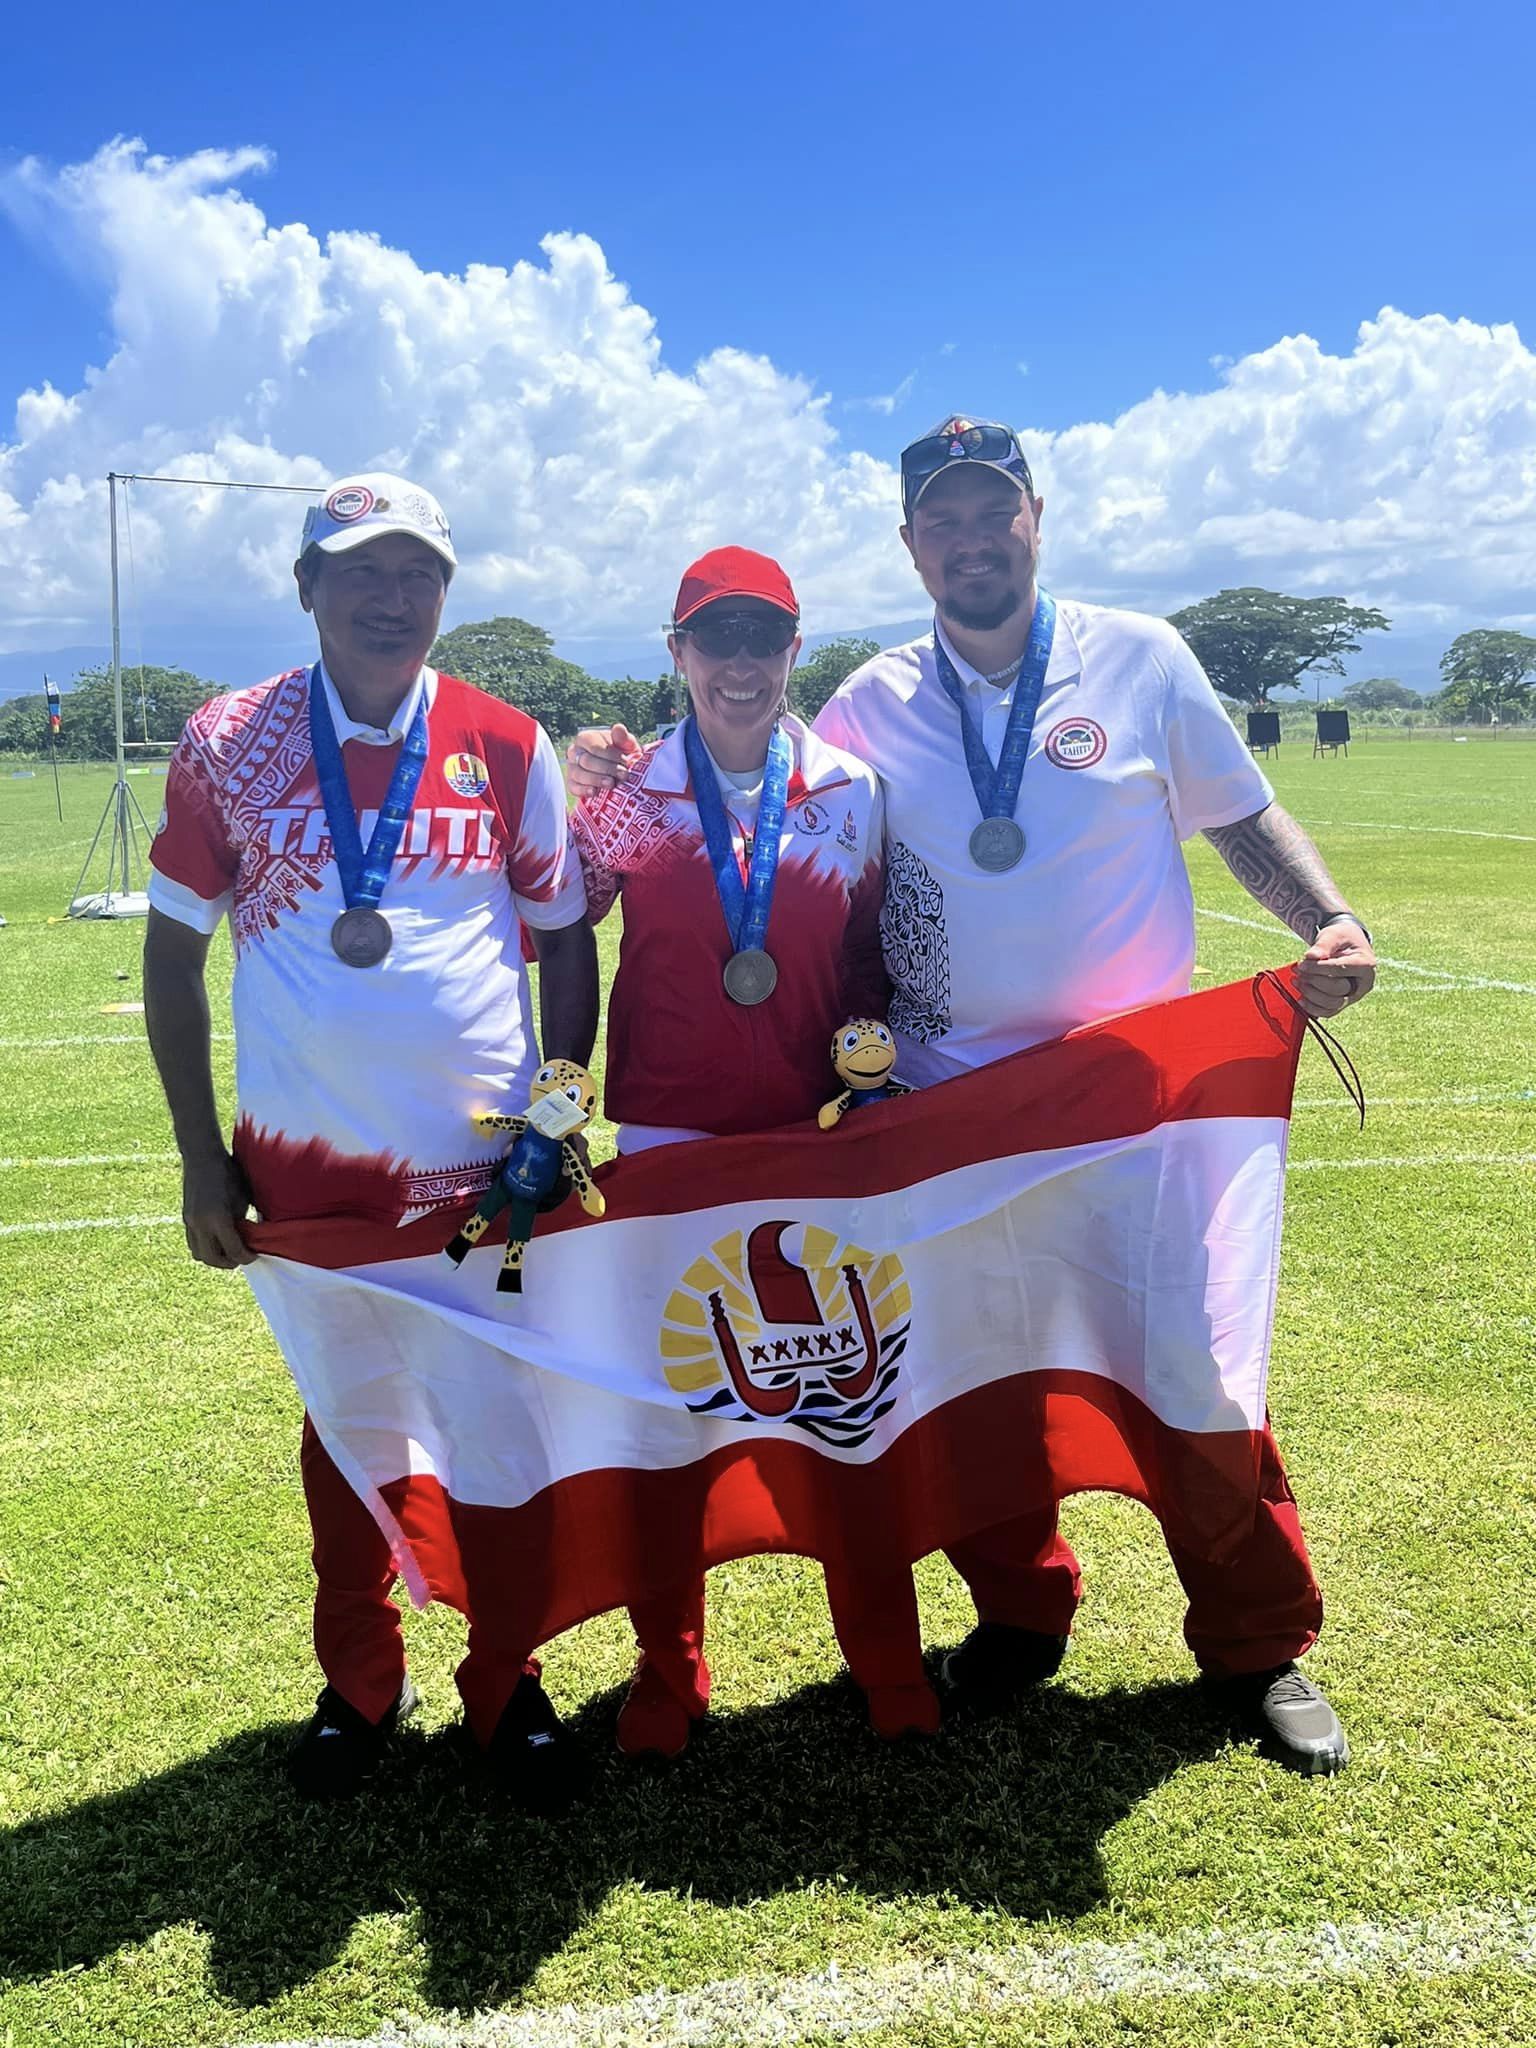 Les archers médaillés avec, de gauche à droite, Teiva Winkelstroeter, Aurore Cottet et Tearii Winkelstroeter. (photo : Fédération tahitienne de tir à l'arc)